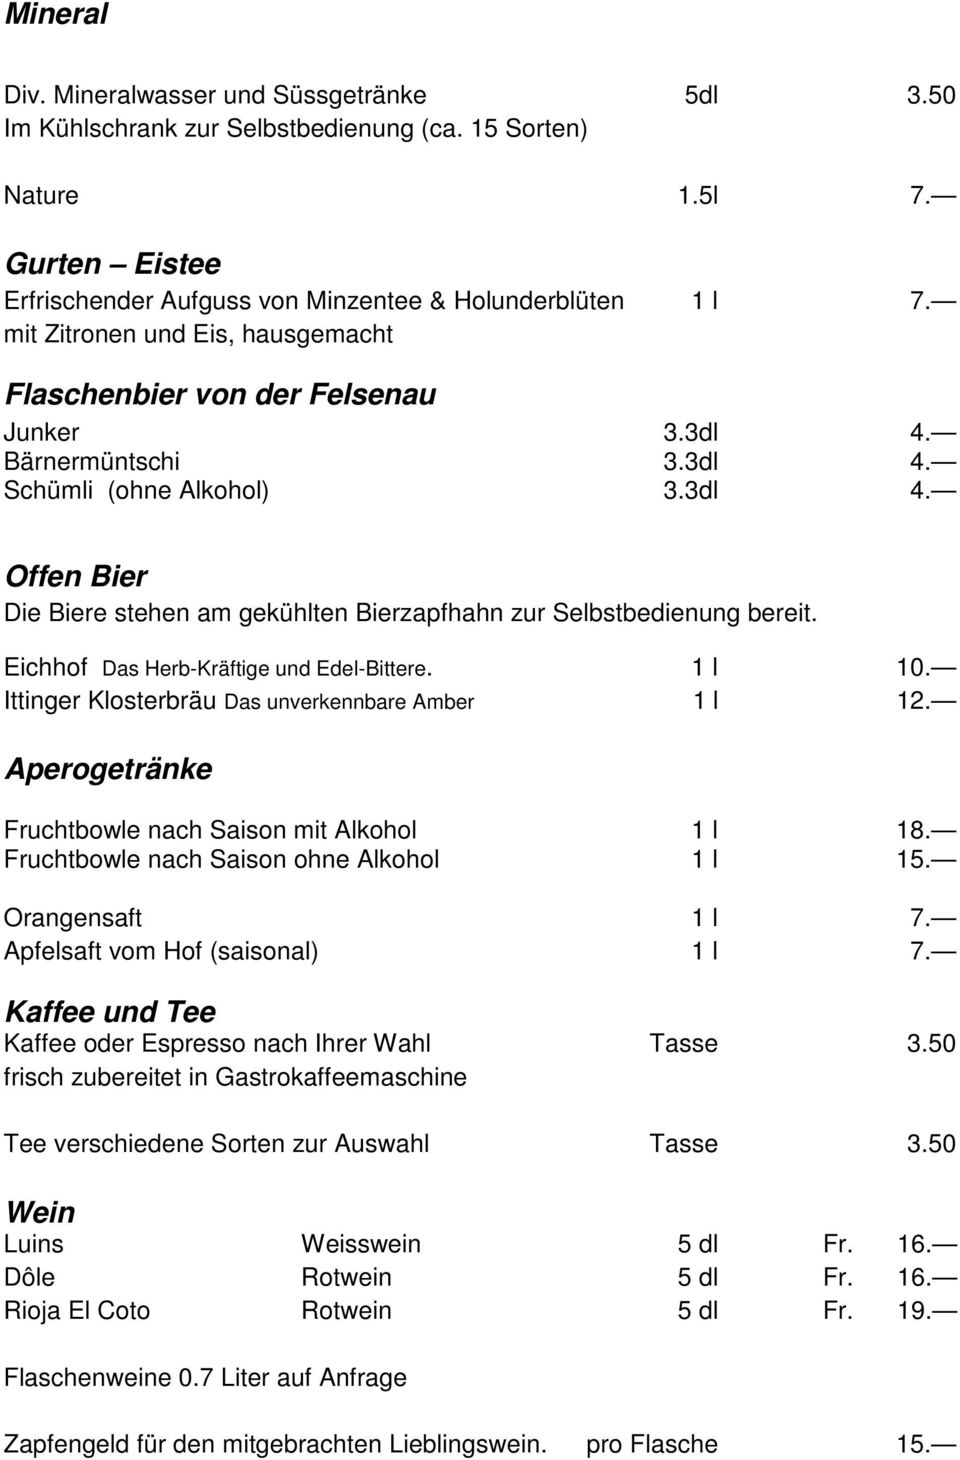 Eichhof Das Herb-Kräftige und Edel-Bittere. 1 l 10. Ittinger Klosterbräu Das unverkennbare Amber 1 l 12. Aperogetränke Fruchtbowle nach Saison mit Alkohol 1 l 18.